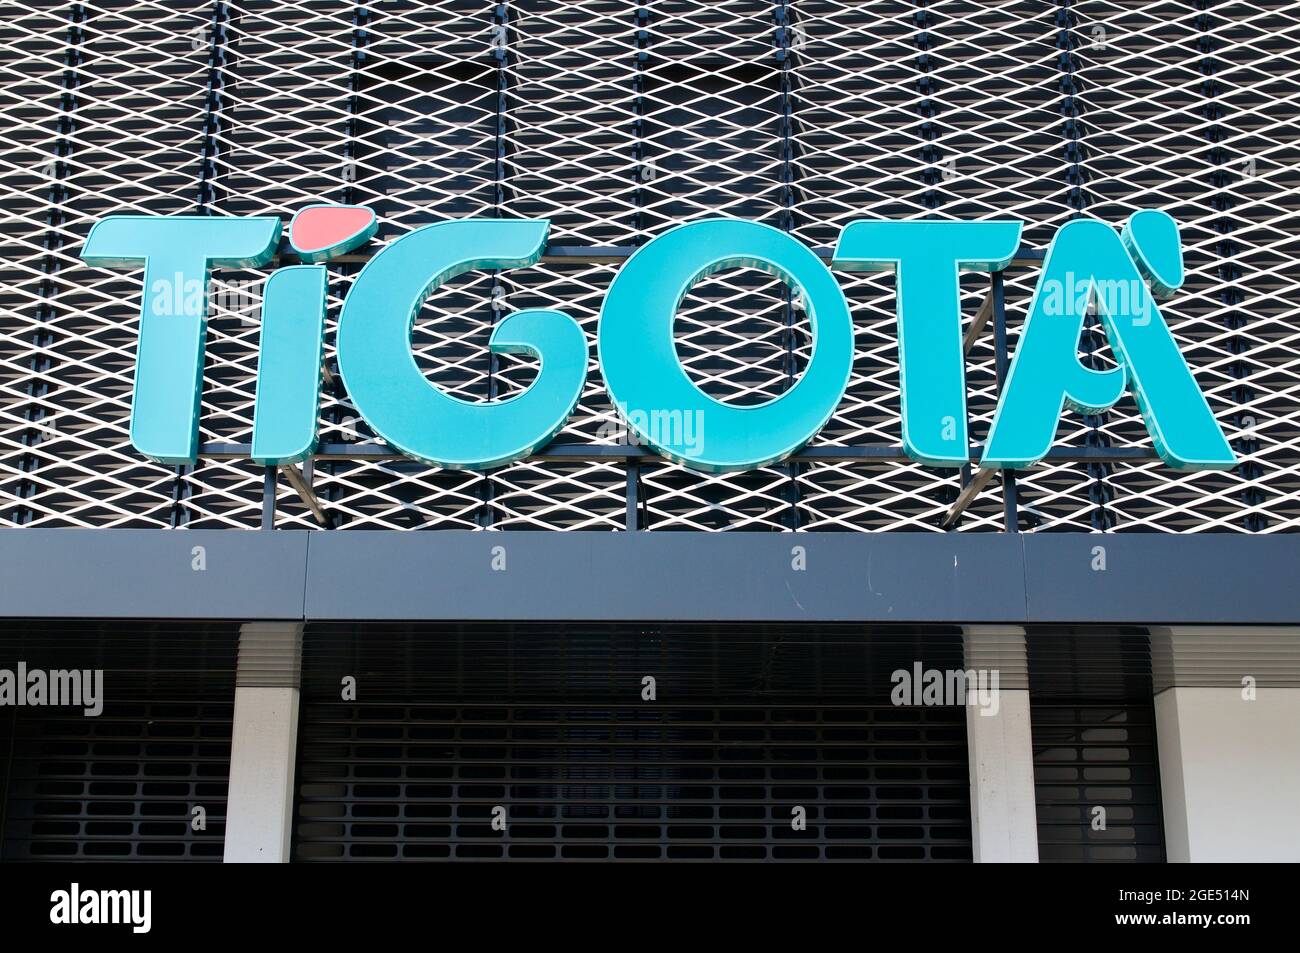 Bioggio, Ticino, Switzerland - 25th April 2021 : Tigotà sign hanging in front of a building in Switzerland. Tigotà is the leading Italian cosmetics, h Stock Photo